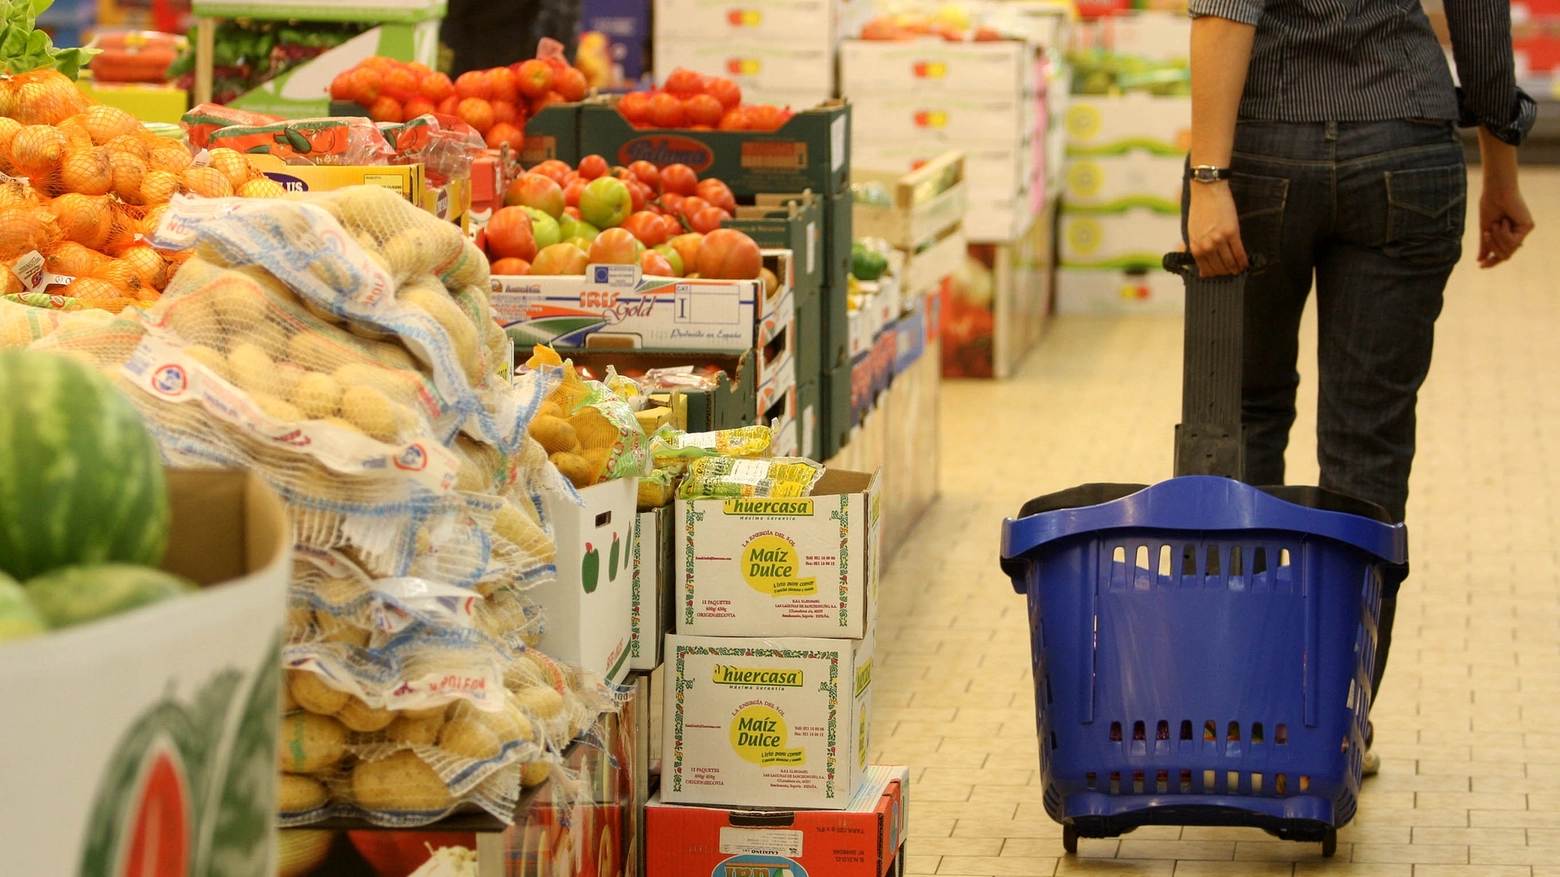 Un supermercato in una foto d'archivio (Imagoeconomia)